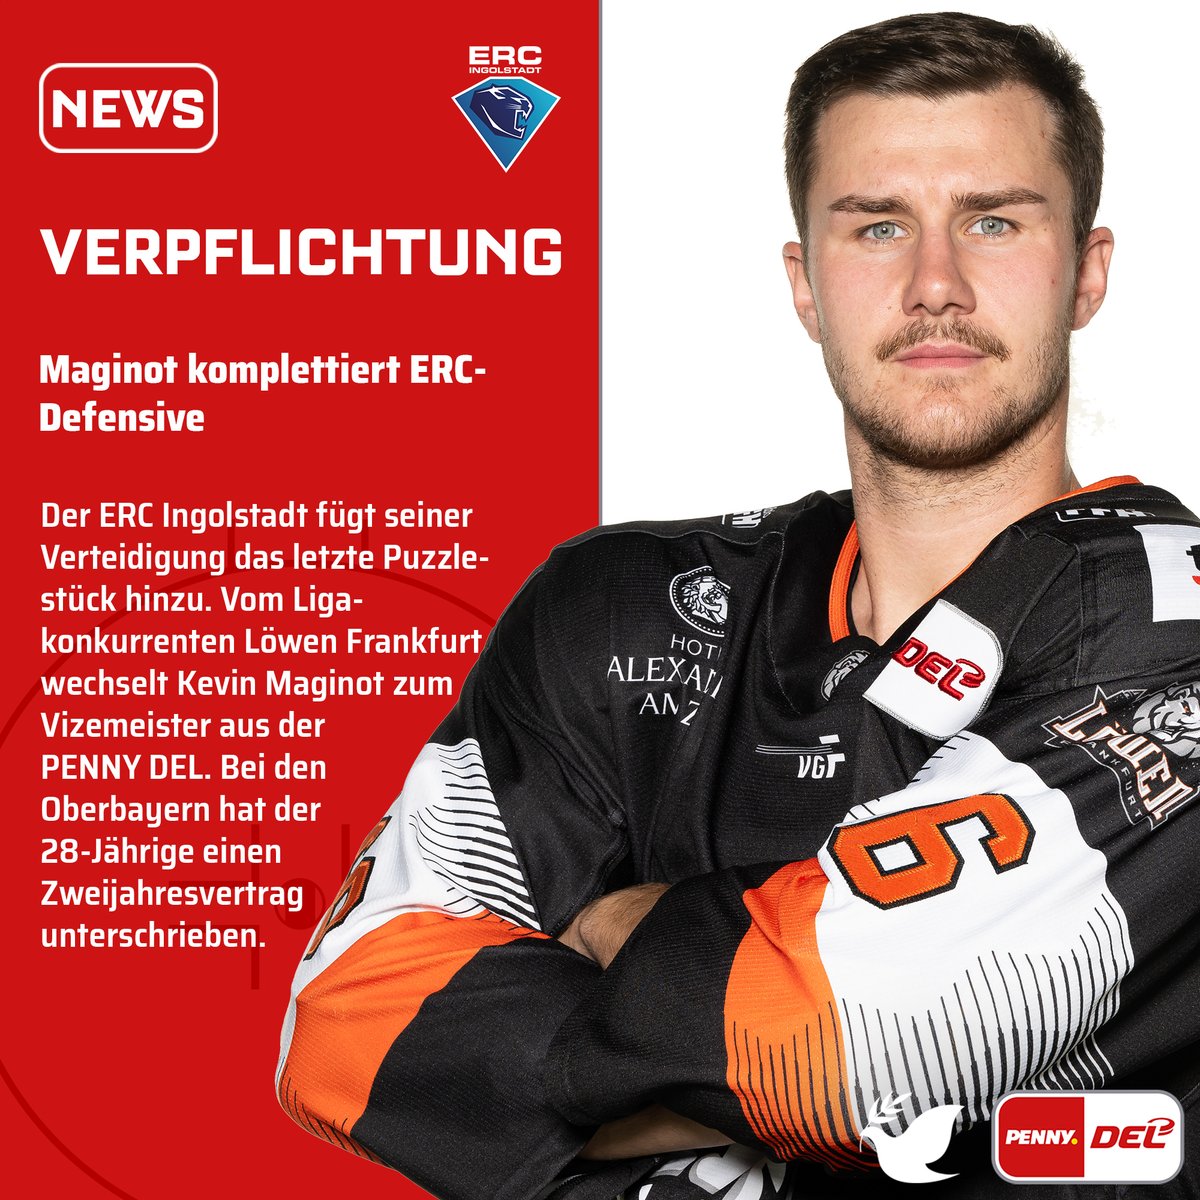 Der @ERCIngolstadt fügt seiner Verteidigung das letzte Puzzlestück hinzu. Vom Ligakonkurrenten Löwen Frankfurt wechselt Kevin Maginot zum Vizemeister aus der #PENNYDEL. Bei den Oberbayern hat der 28-Jährige einen Zweijahresvertrag unterschrieben.